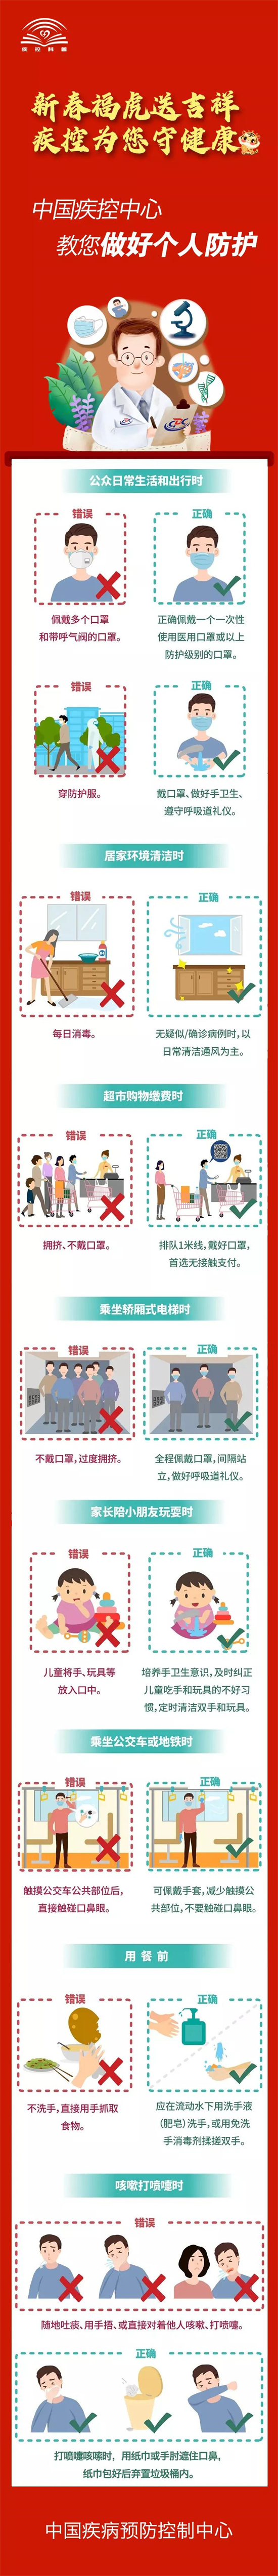 新春福虎送吉祥 疾控为您守健康|​ 中国疾控中心教您做好个人防护